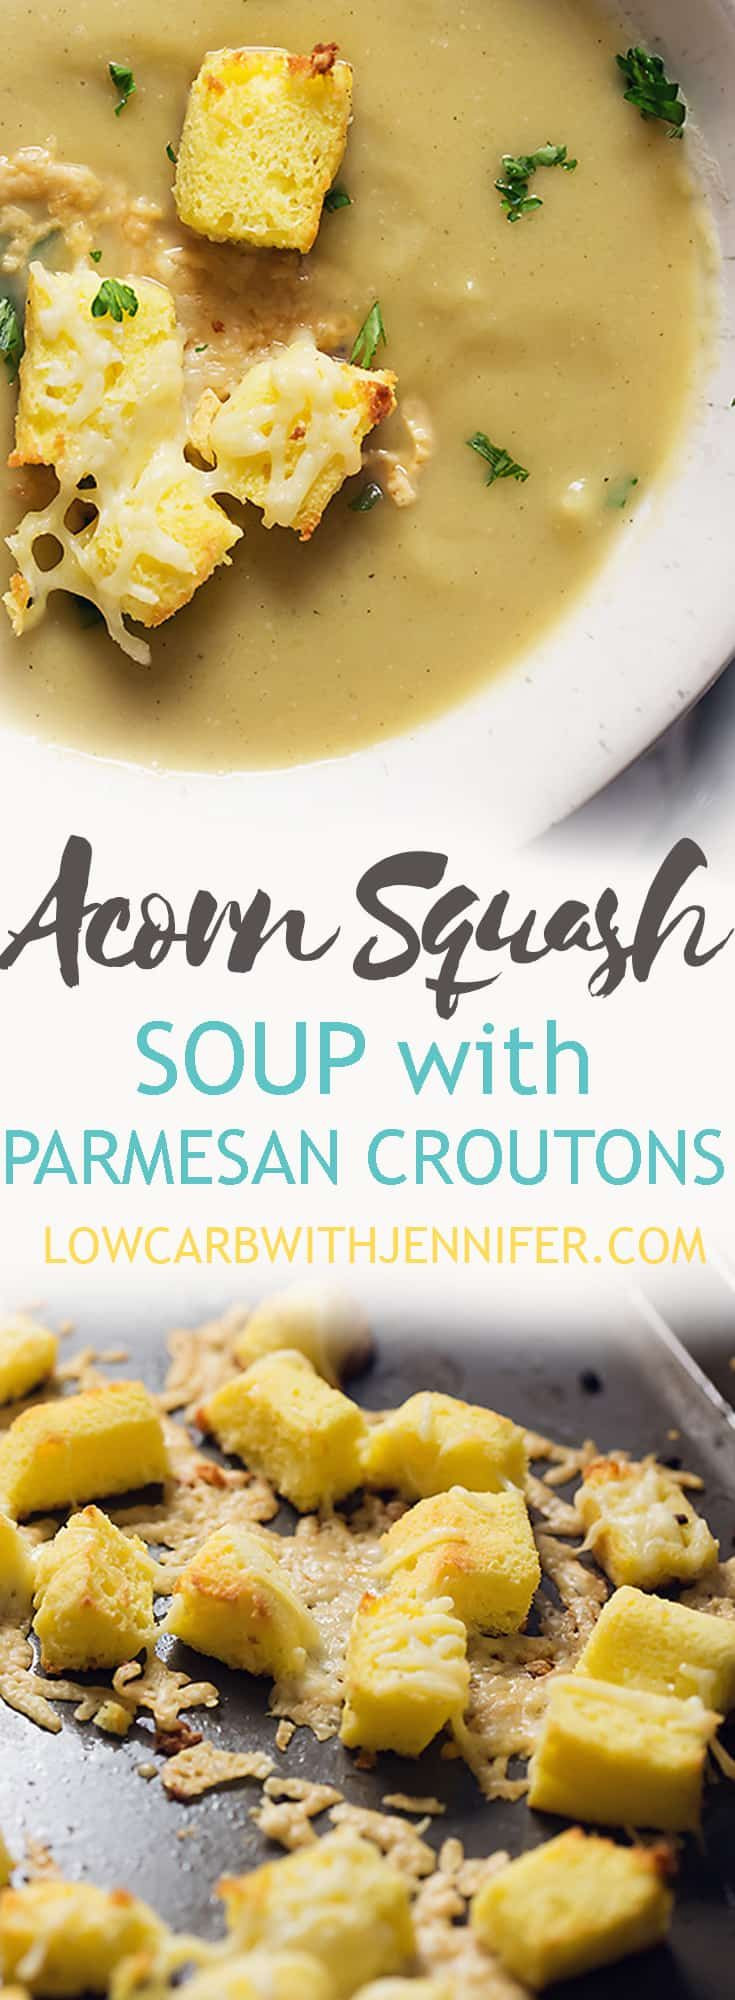 Low Carb Acorn Squash Recipes
 Acorn Squash Soup with Parmesan Croutons Recipe